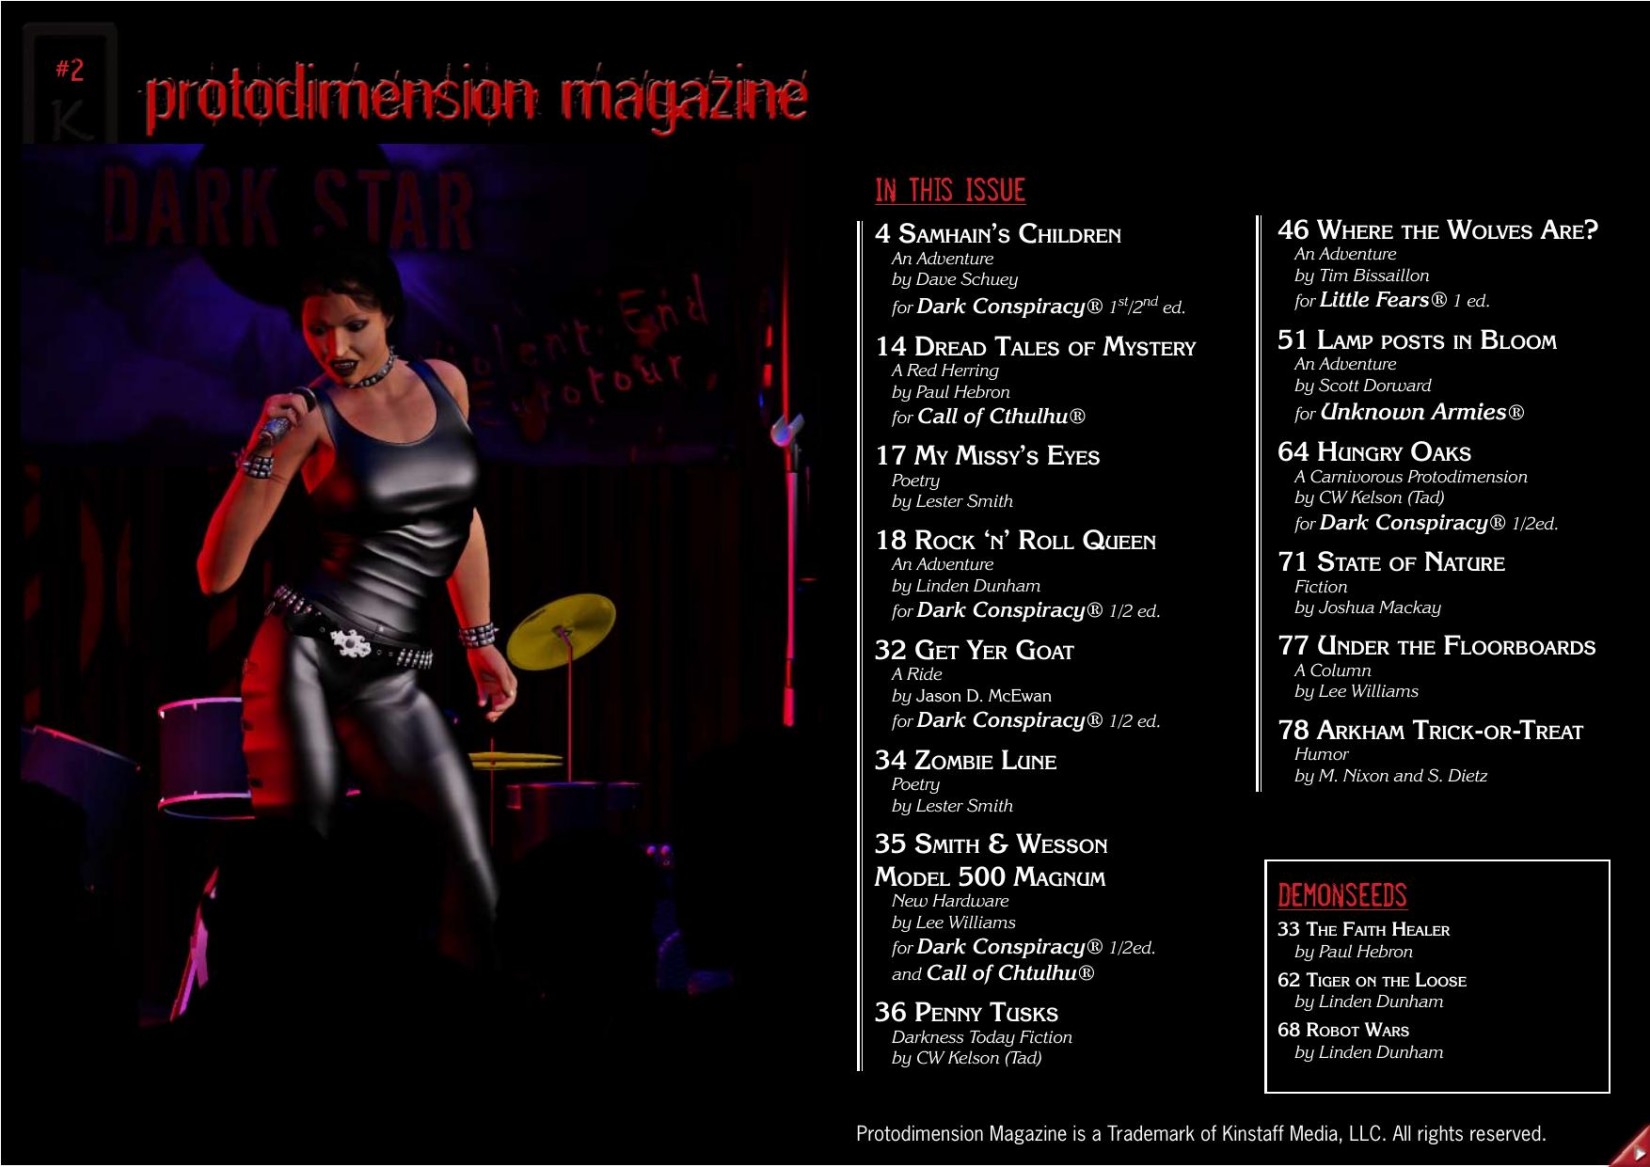 Protodimension Magazine #2 (Fall 2009)